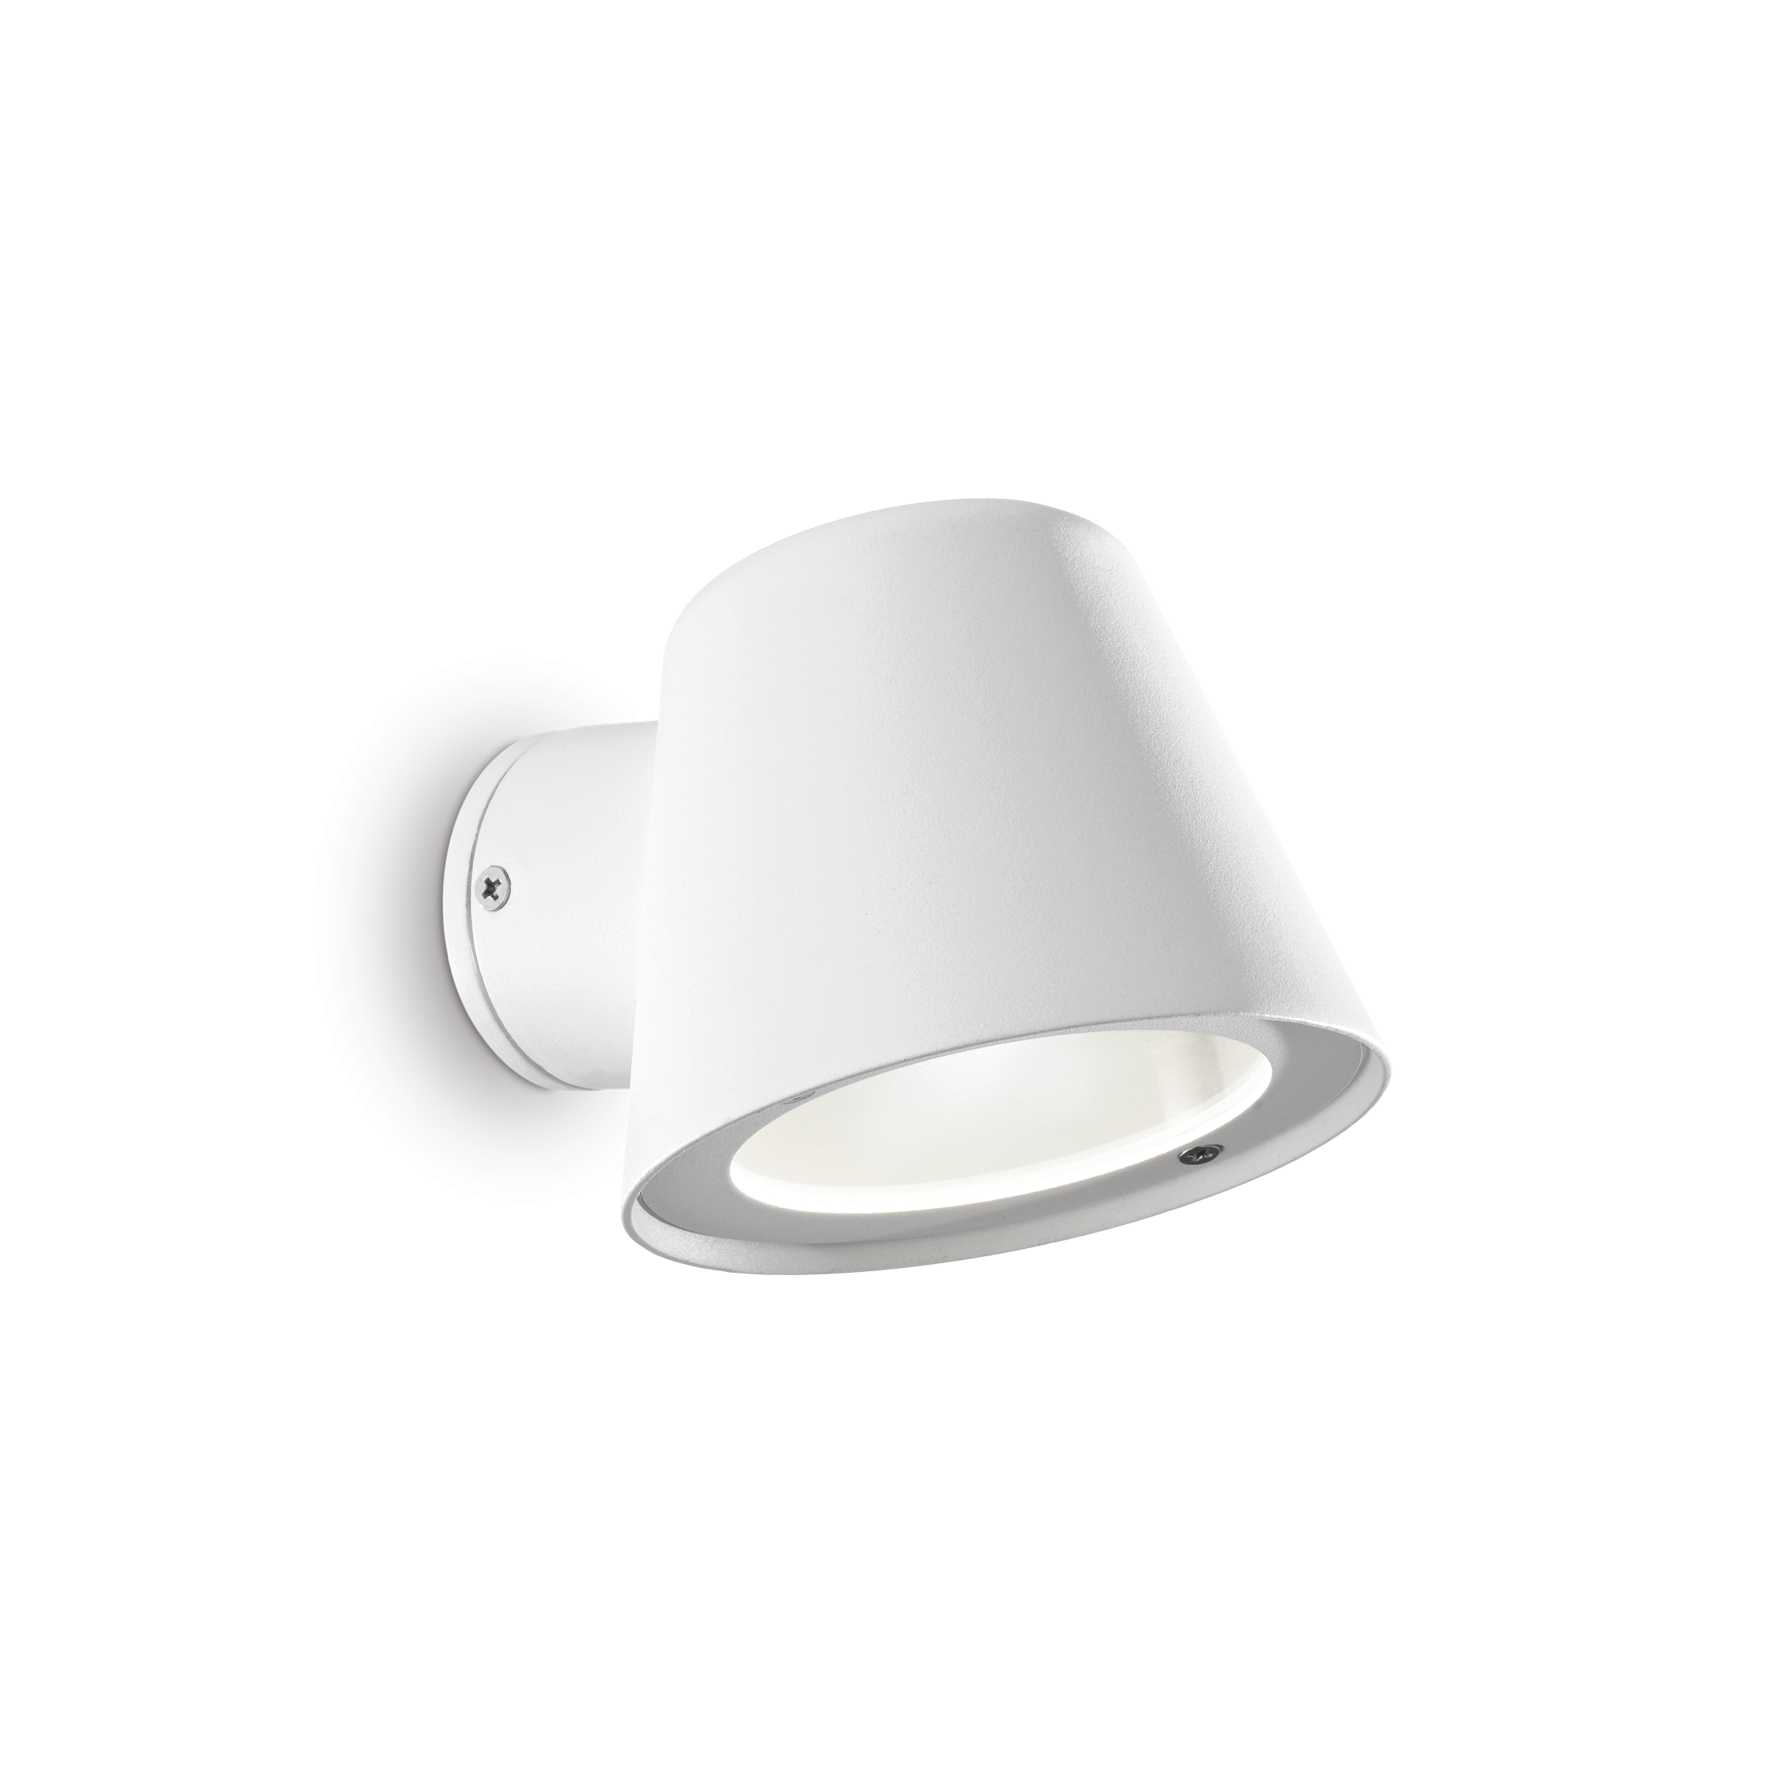 AD hotelska oprema Vanjska zidna lampa Gas ap1- Bijele boje slika proizvoda